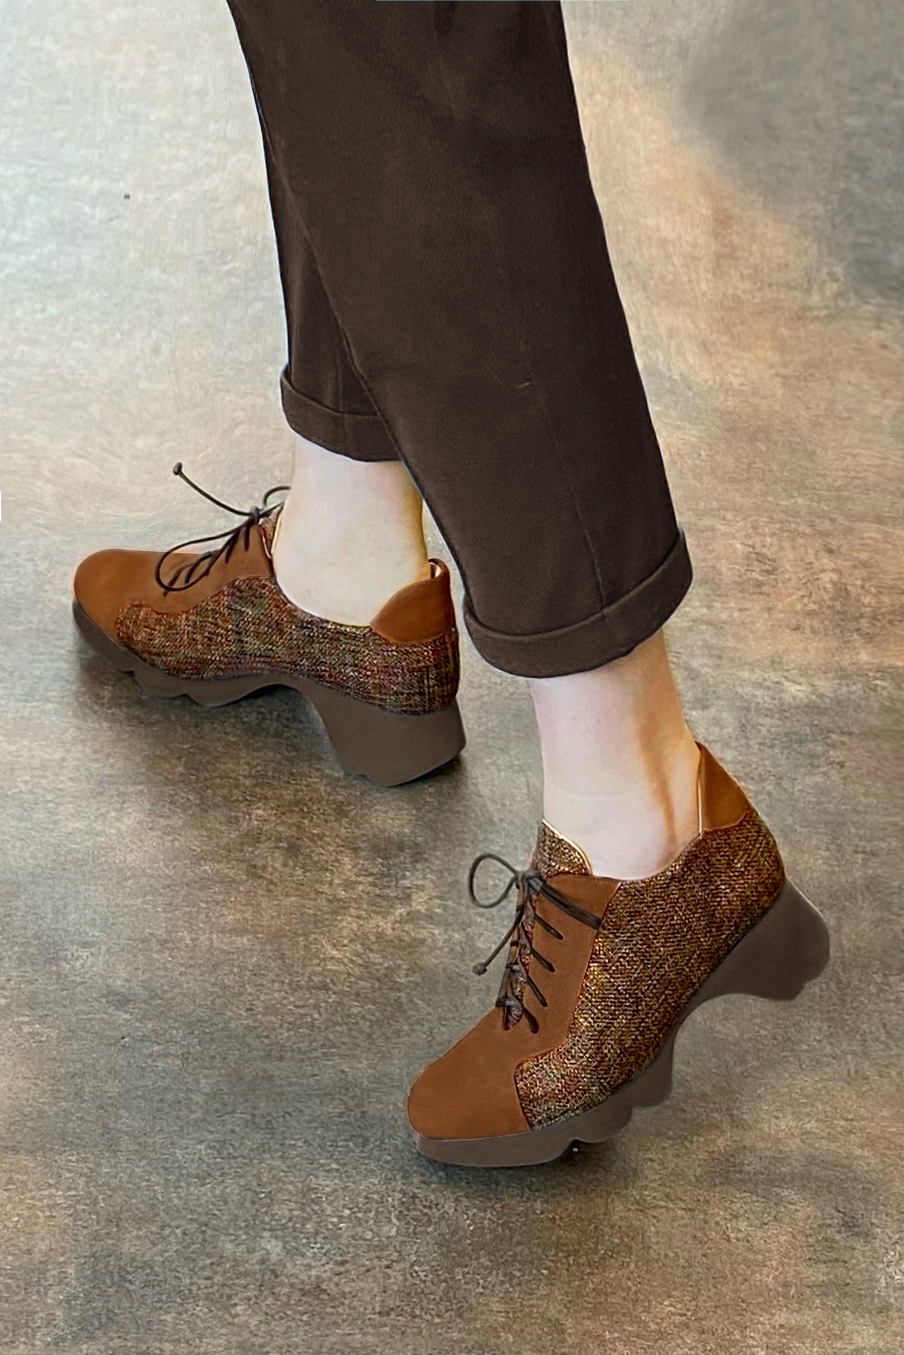 Chaussure femme à lacets : Derby sport couleur marron caramel et orange corail.. Vue porté - Florence KOOIJMAN